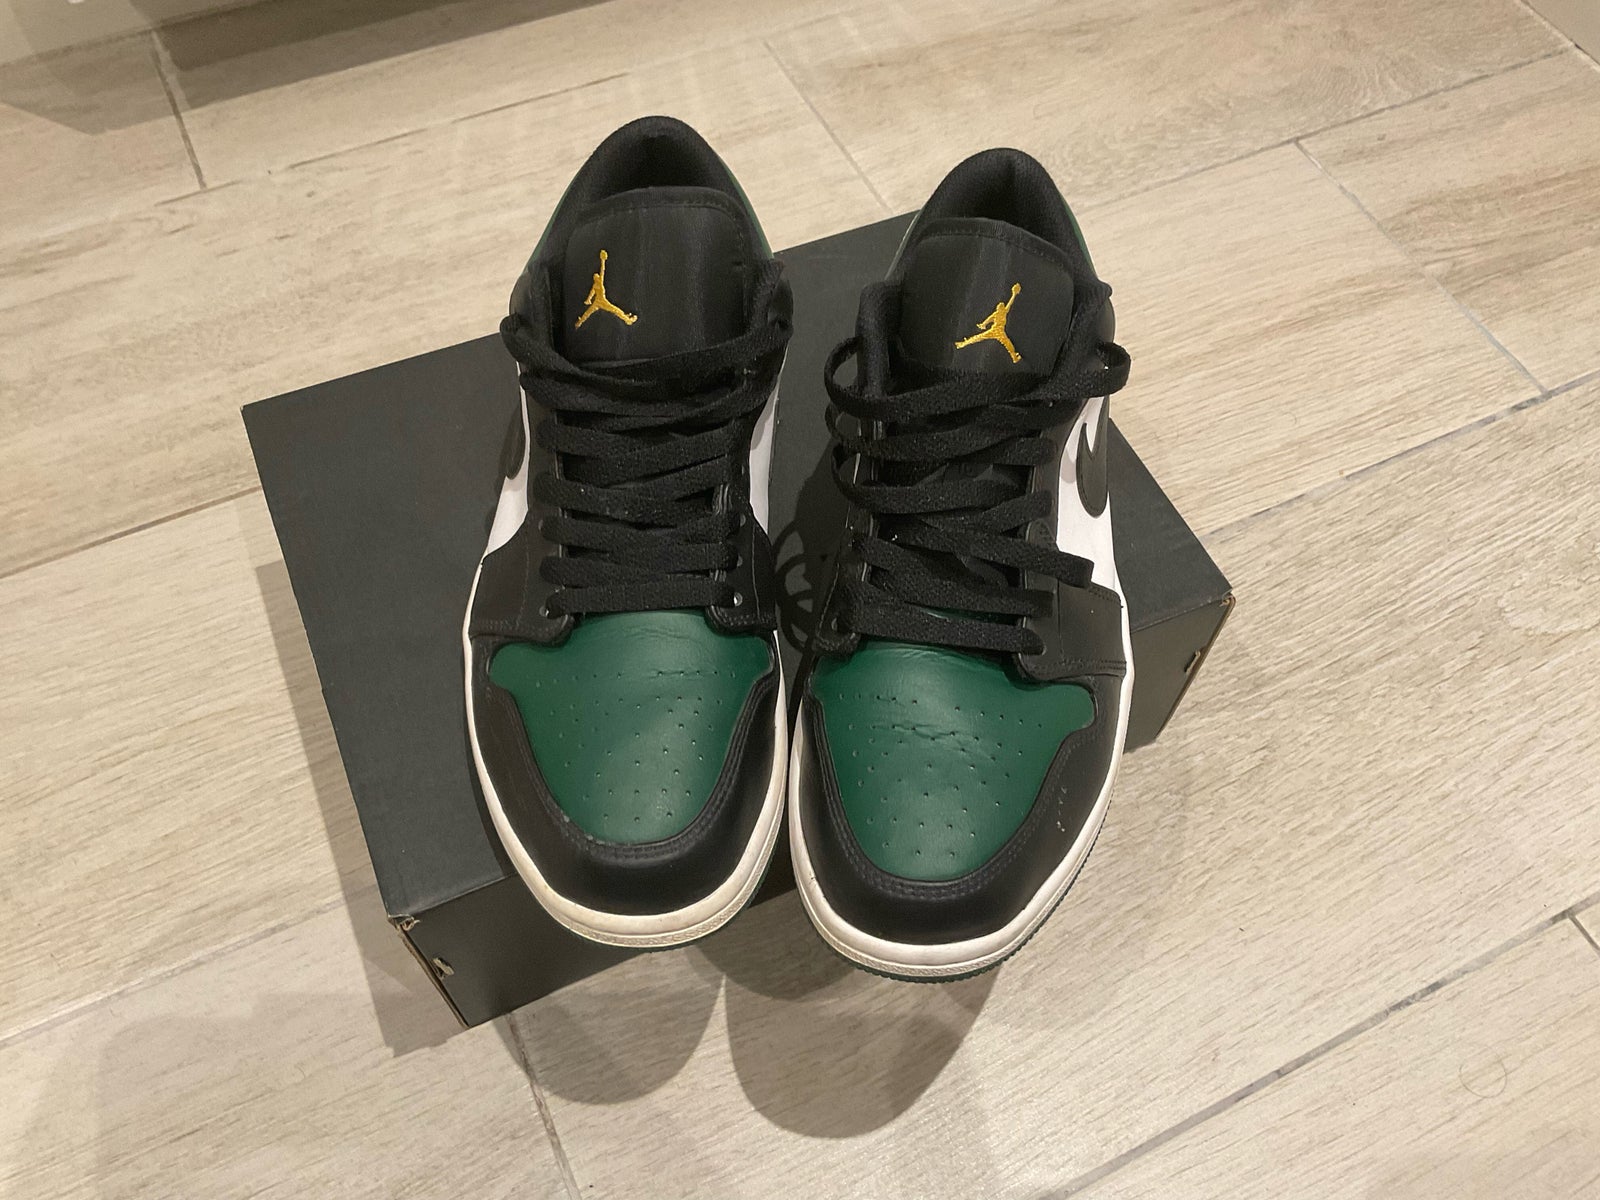 Sneakers, Air Jordan 1 low “ green toe” , str. 43